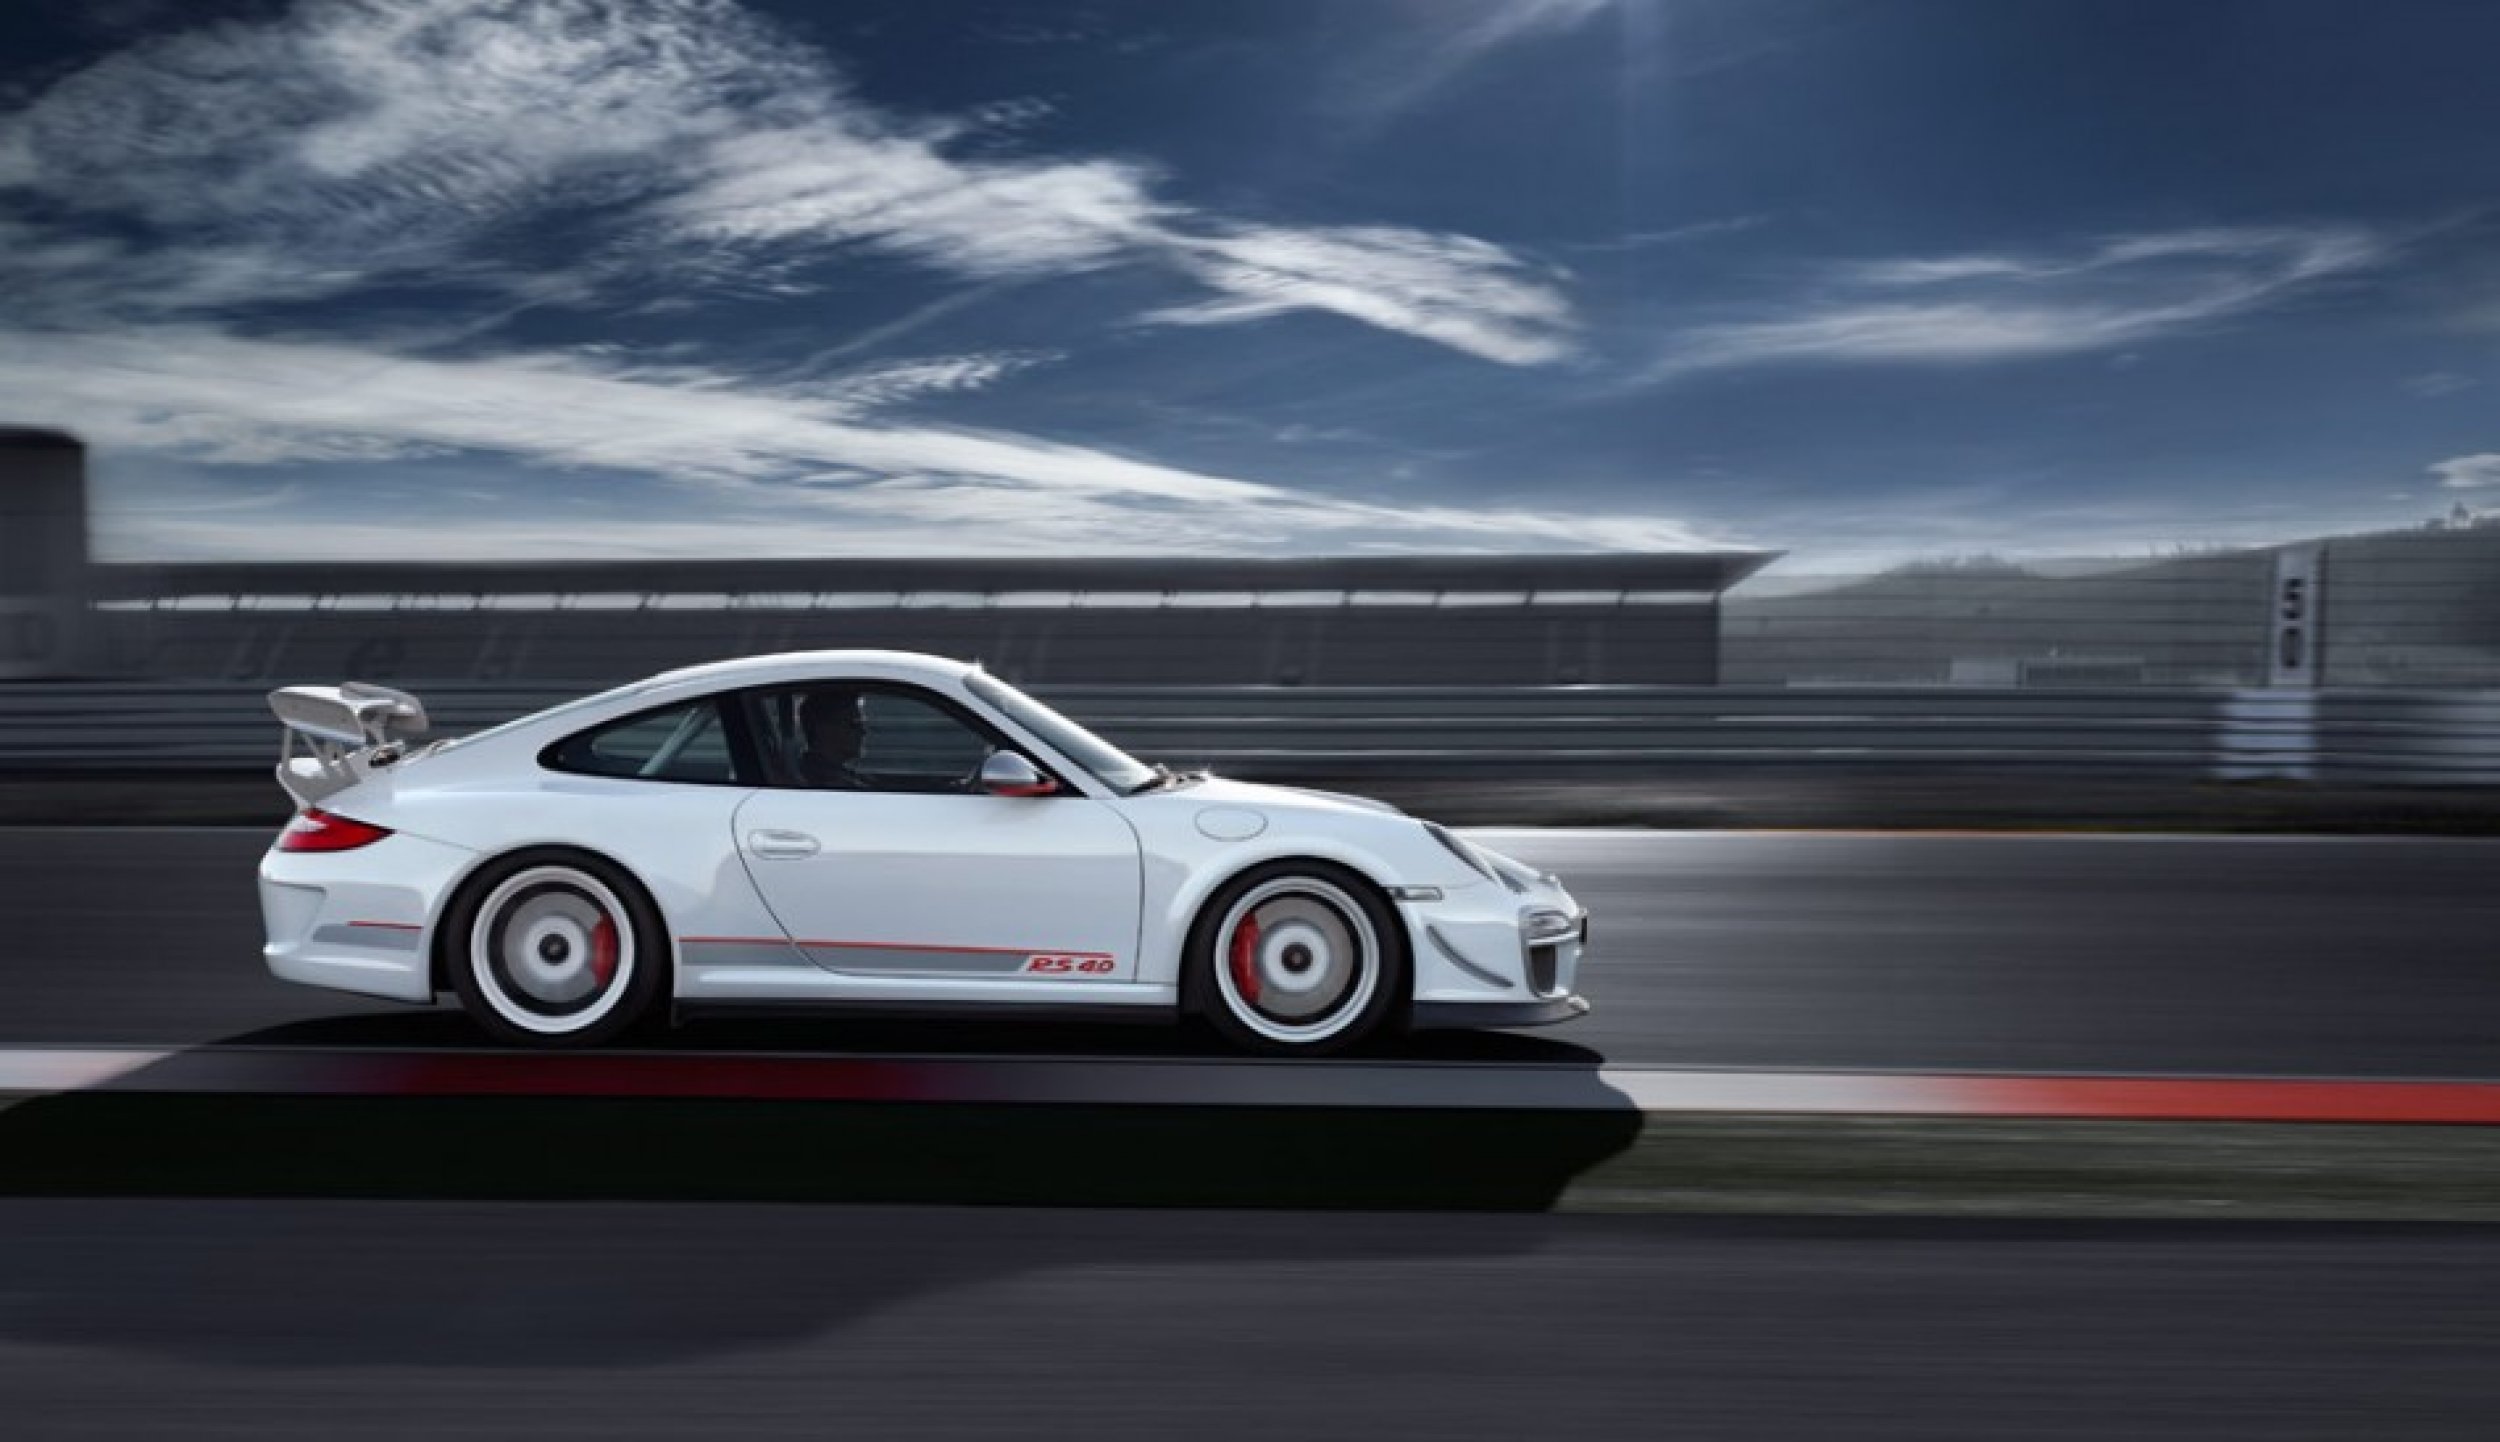 Inside the Porsche 911 GT3